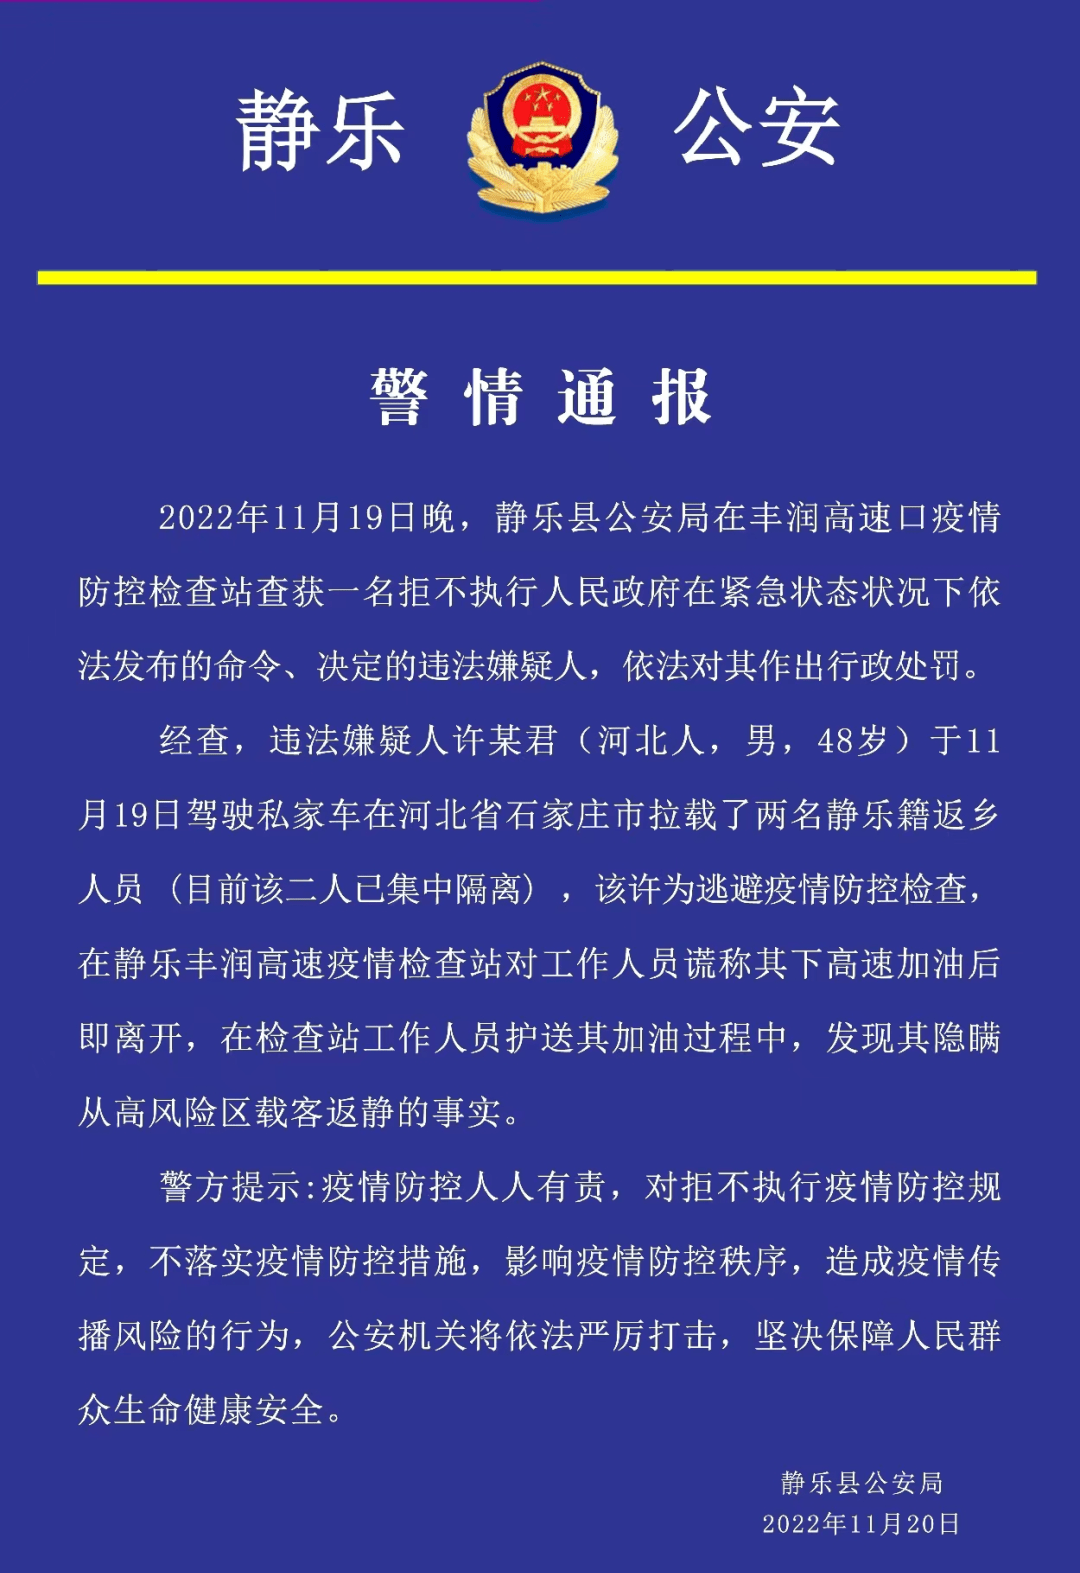 忻州:76人被处罚,拒不执行疫情防控规定,扰乱疫情防控秩序